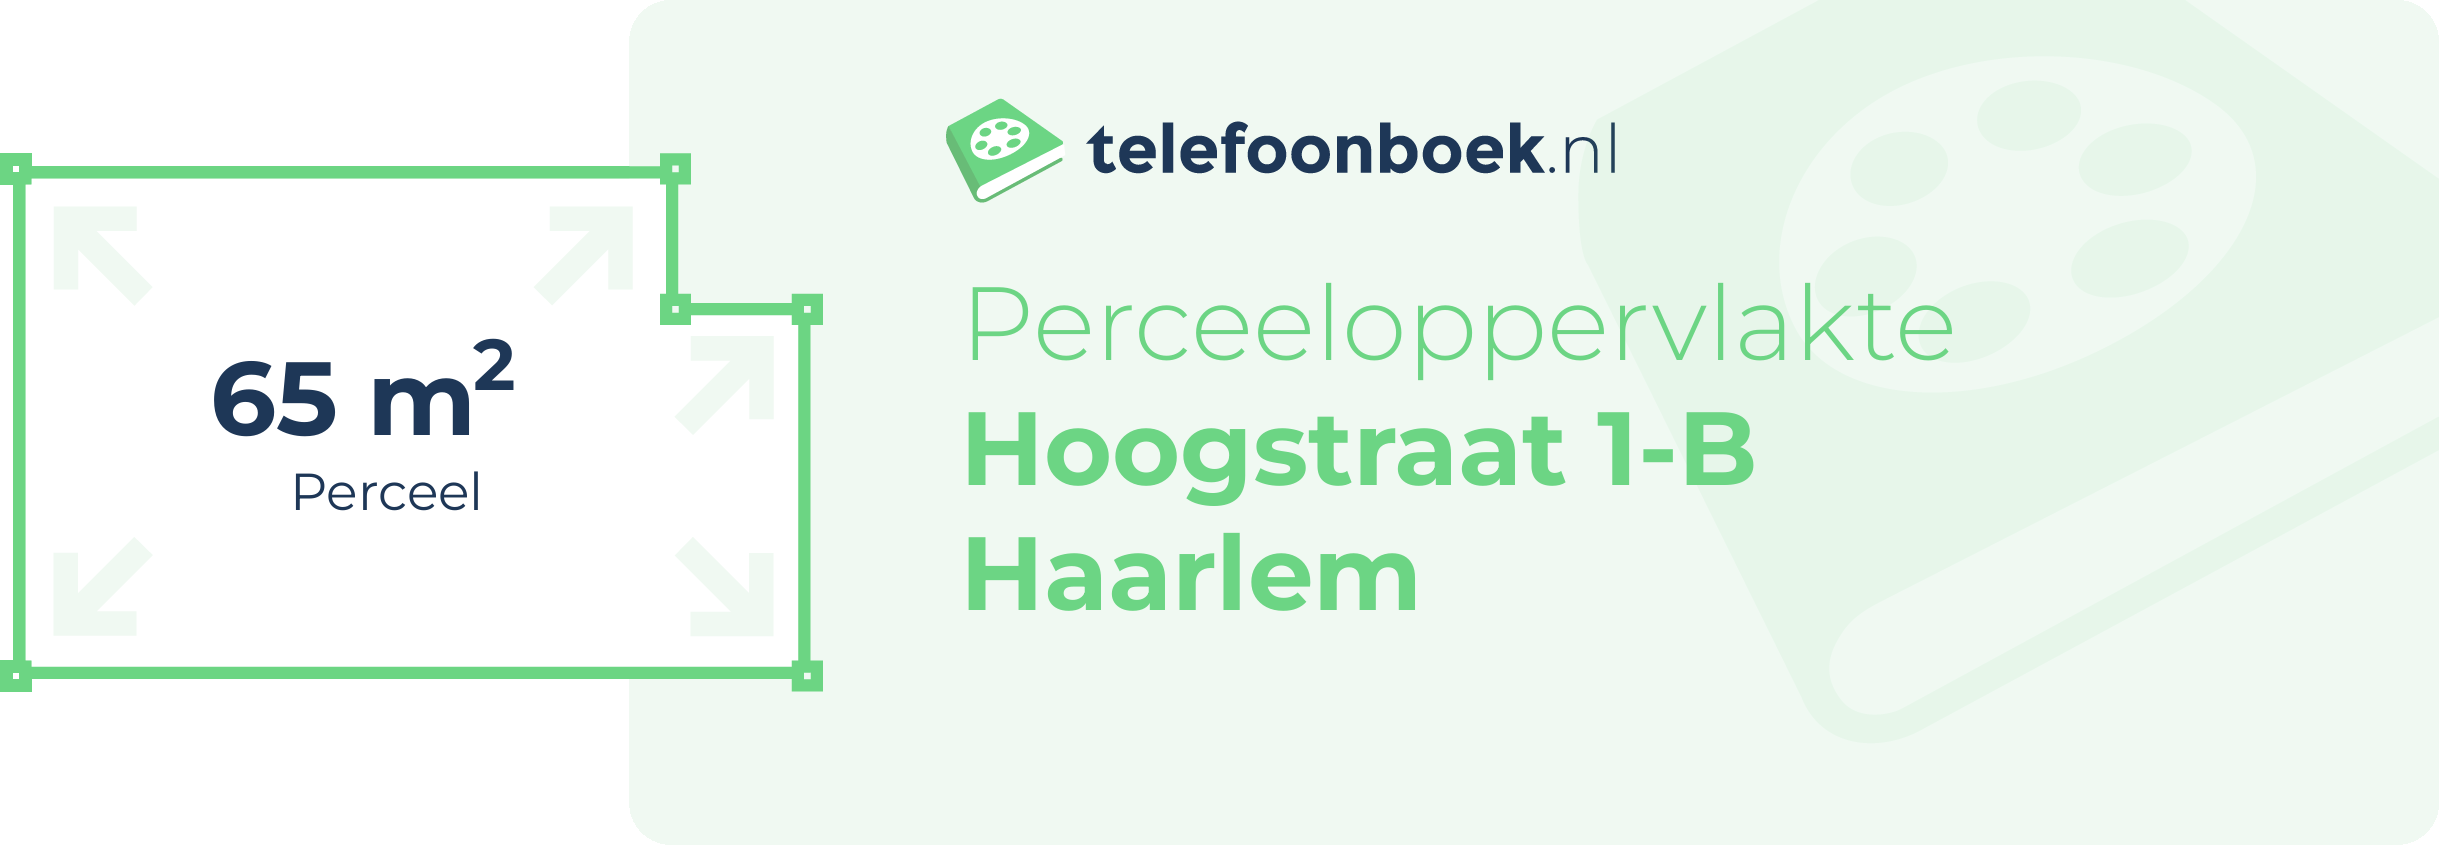 Perceeloppervlakte Hoogstraat 1-B Haarlem